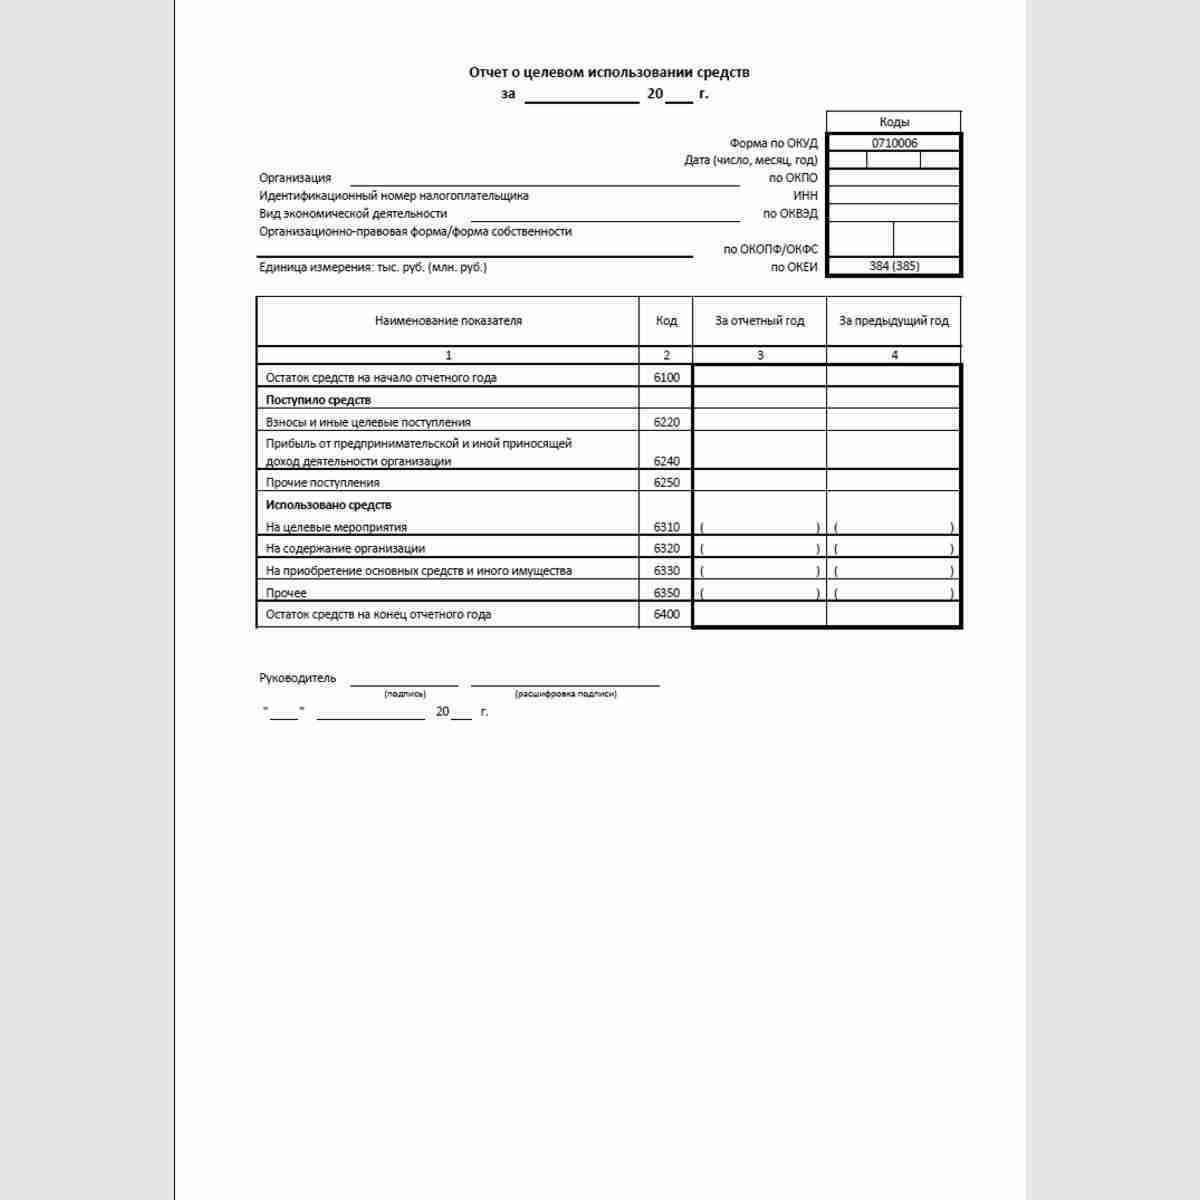 Упрощенная форма "Отчет о целевом использовании средств" (ОКУД 0710006)